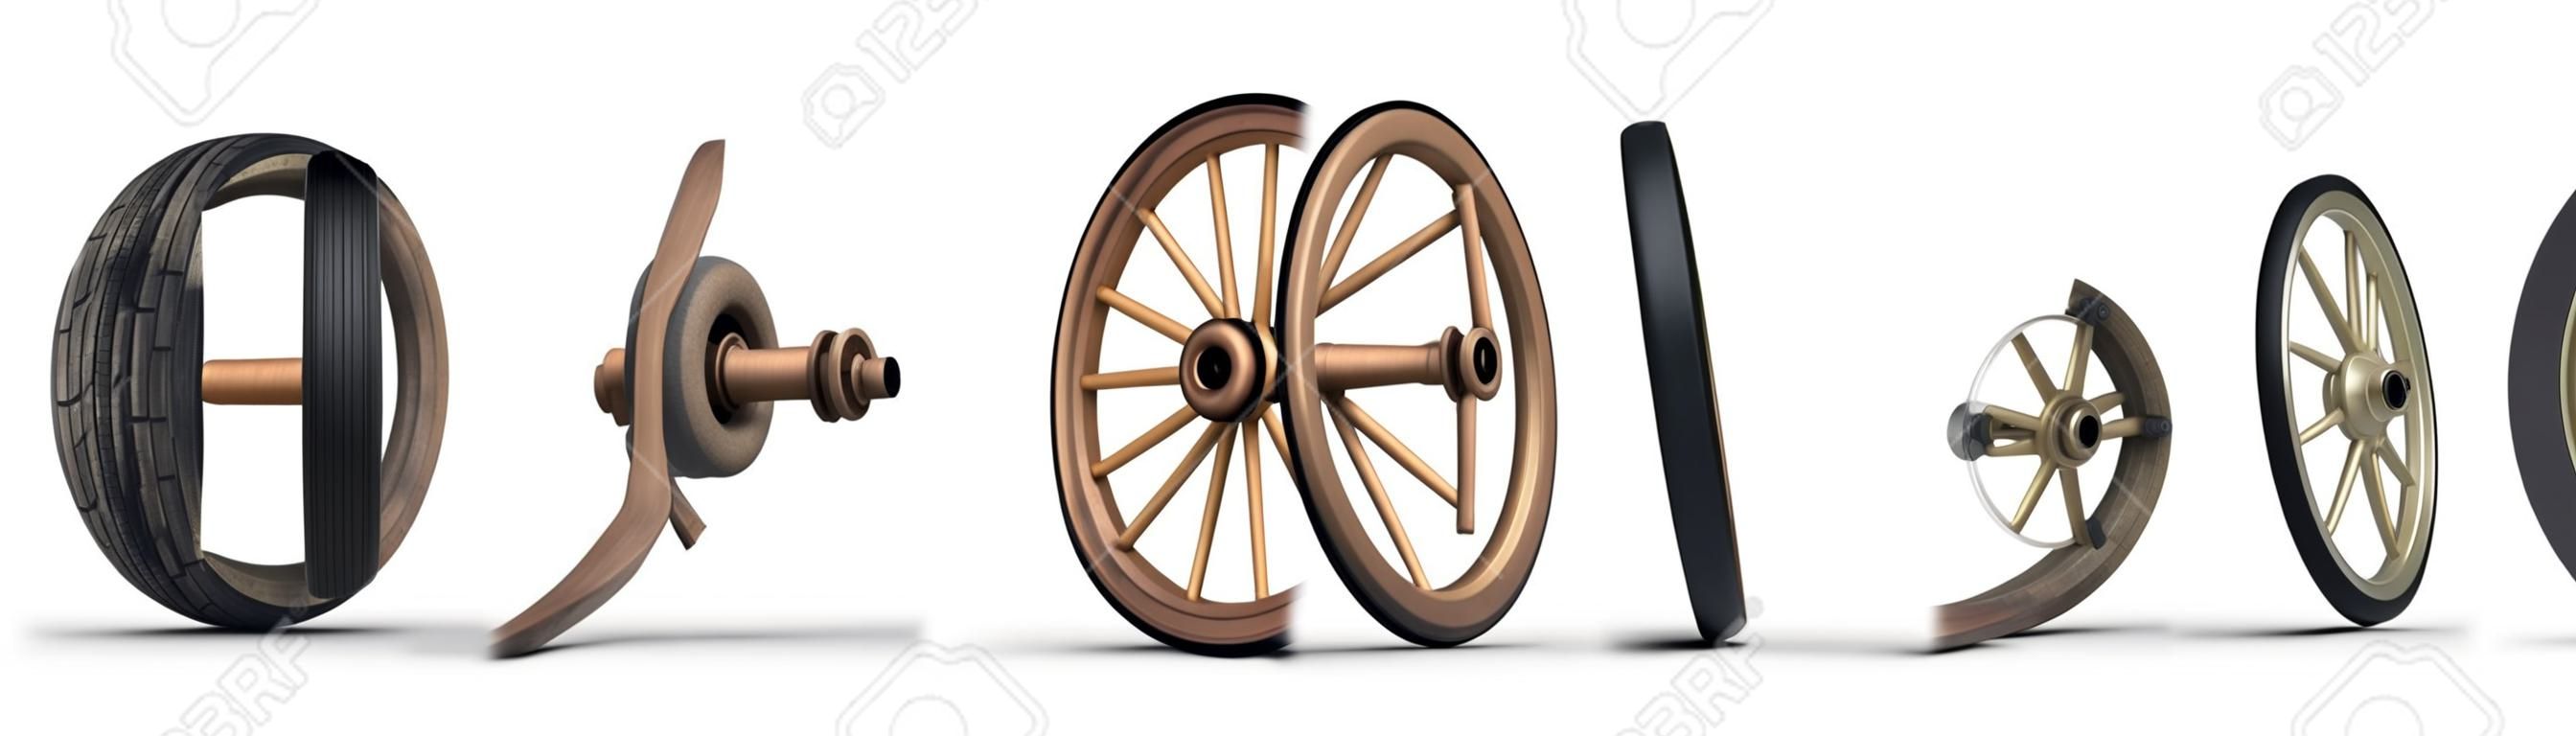 Ilustración que muestra la evolución de la rueda a partir de una rueda de piedra y terminando con una placa de acero dio llanta radial. Disparó sobre un fondo blanco.